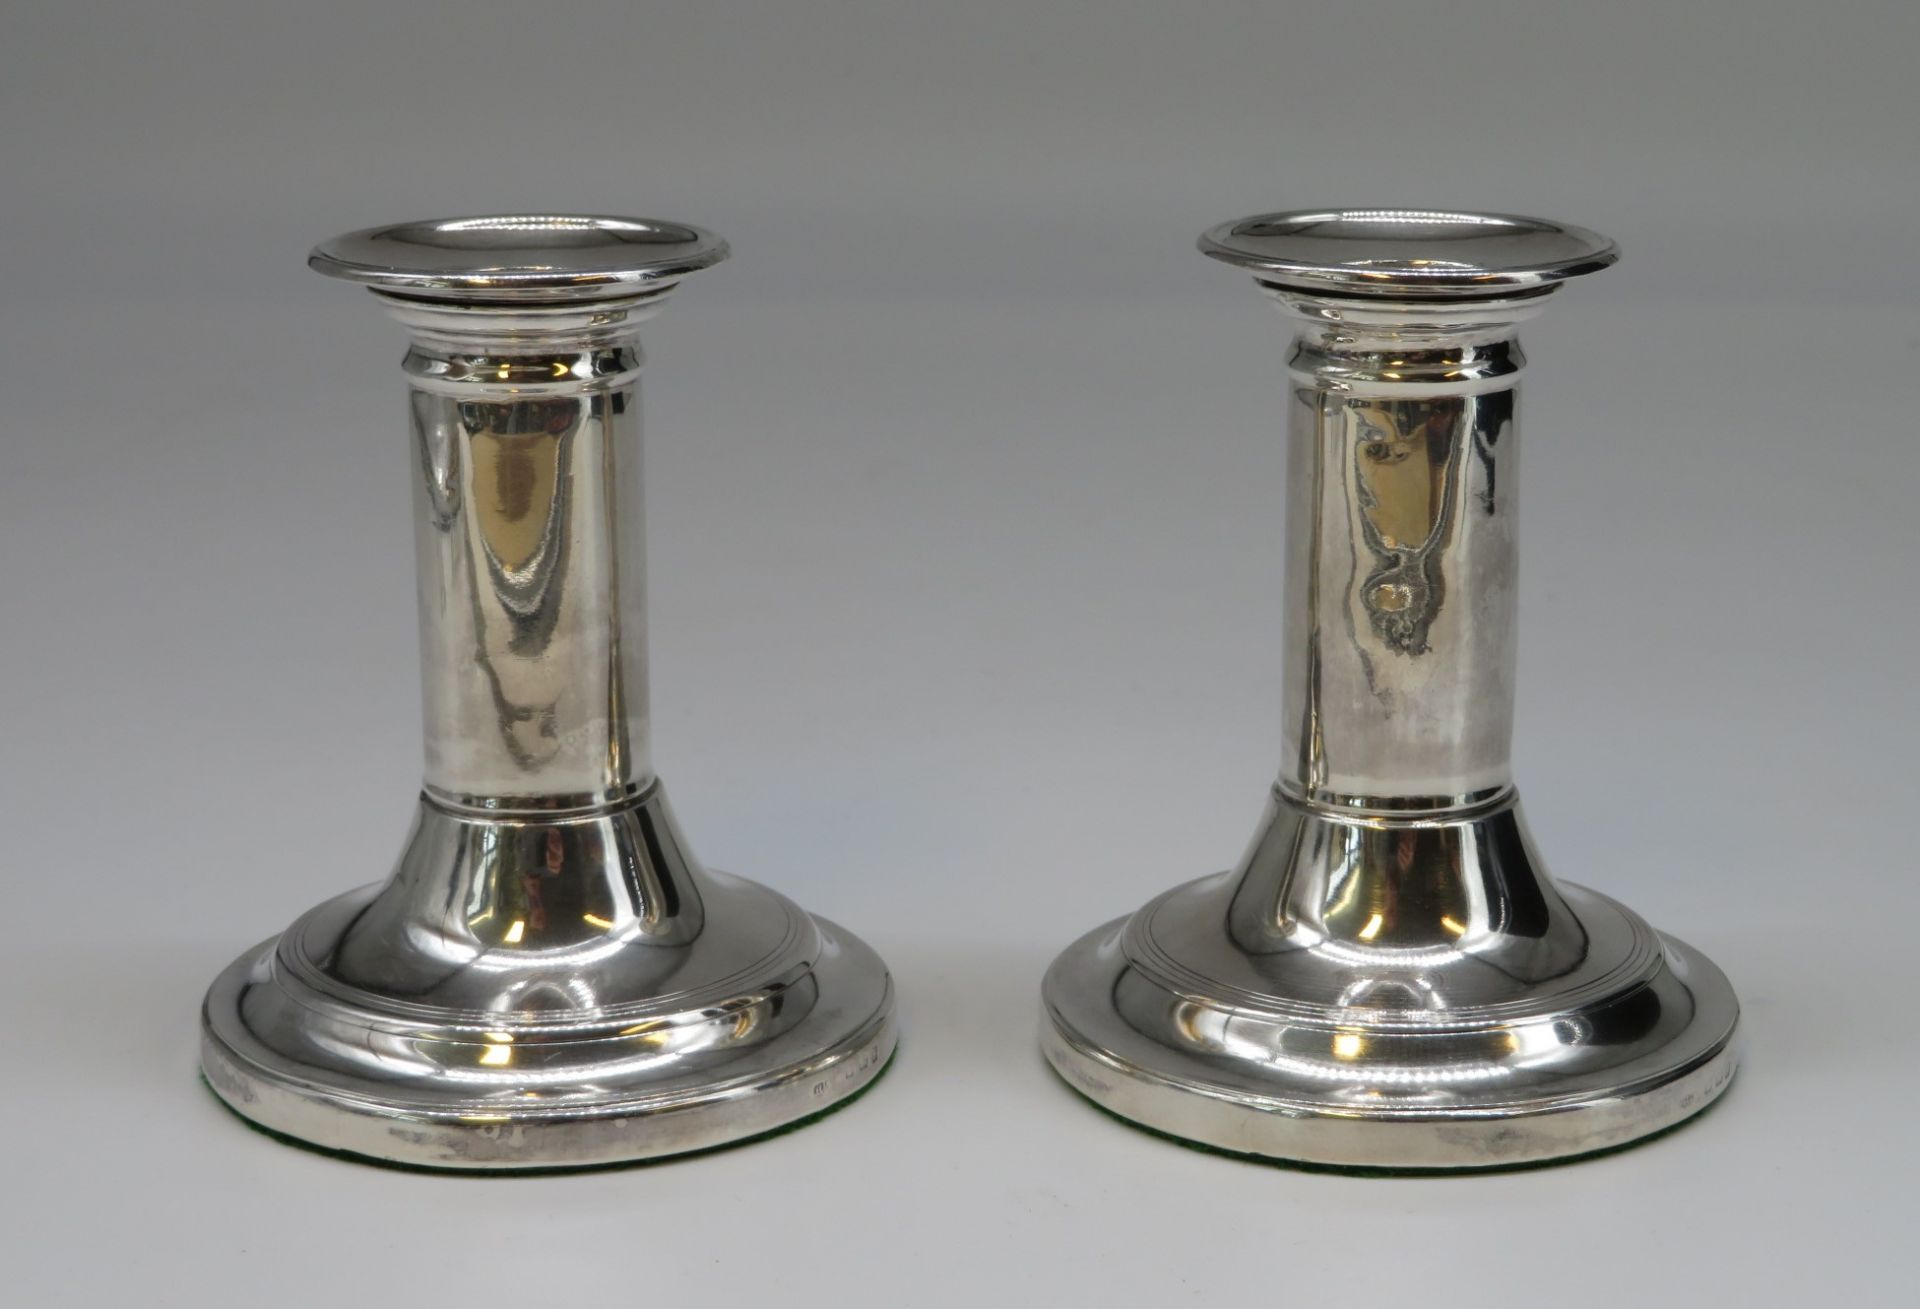 2 Kerzenleuchter, England, um 1900, 925er Sterlingsilber, gepunzt, brutto 530 g, h 10 cm, d 8,5 cm.